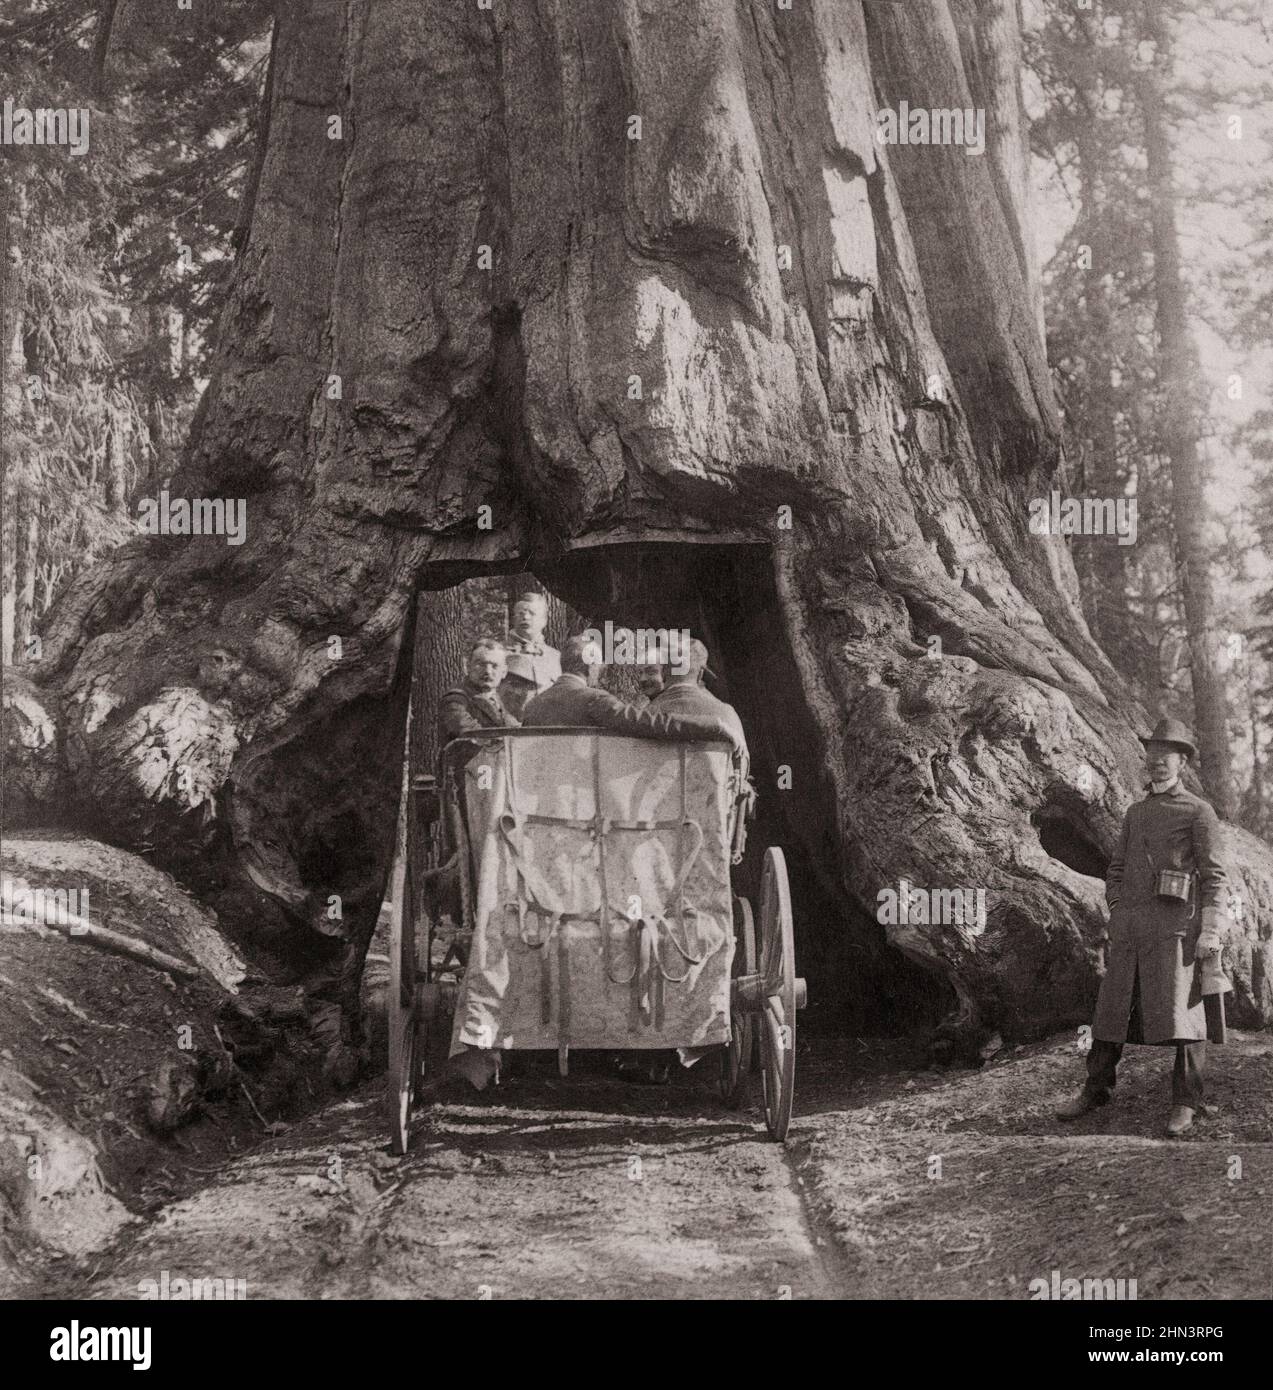 Foto vintage del presidente Roosevelt en medio de 'Nature's Wonders' - conduciendo a través de Wawona, los grandes árboles de California. EE.UU. Julio de 1903 Foto de stock